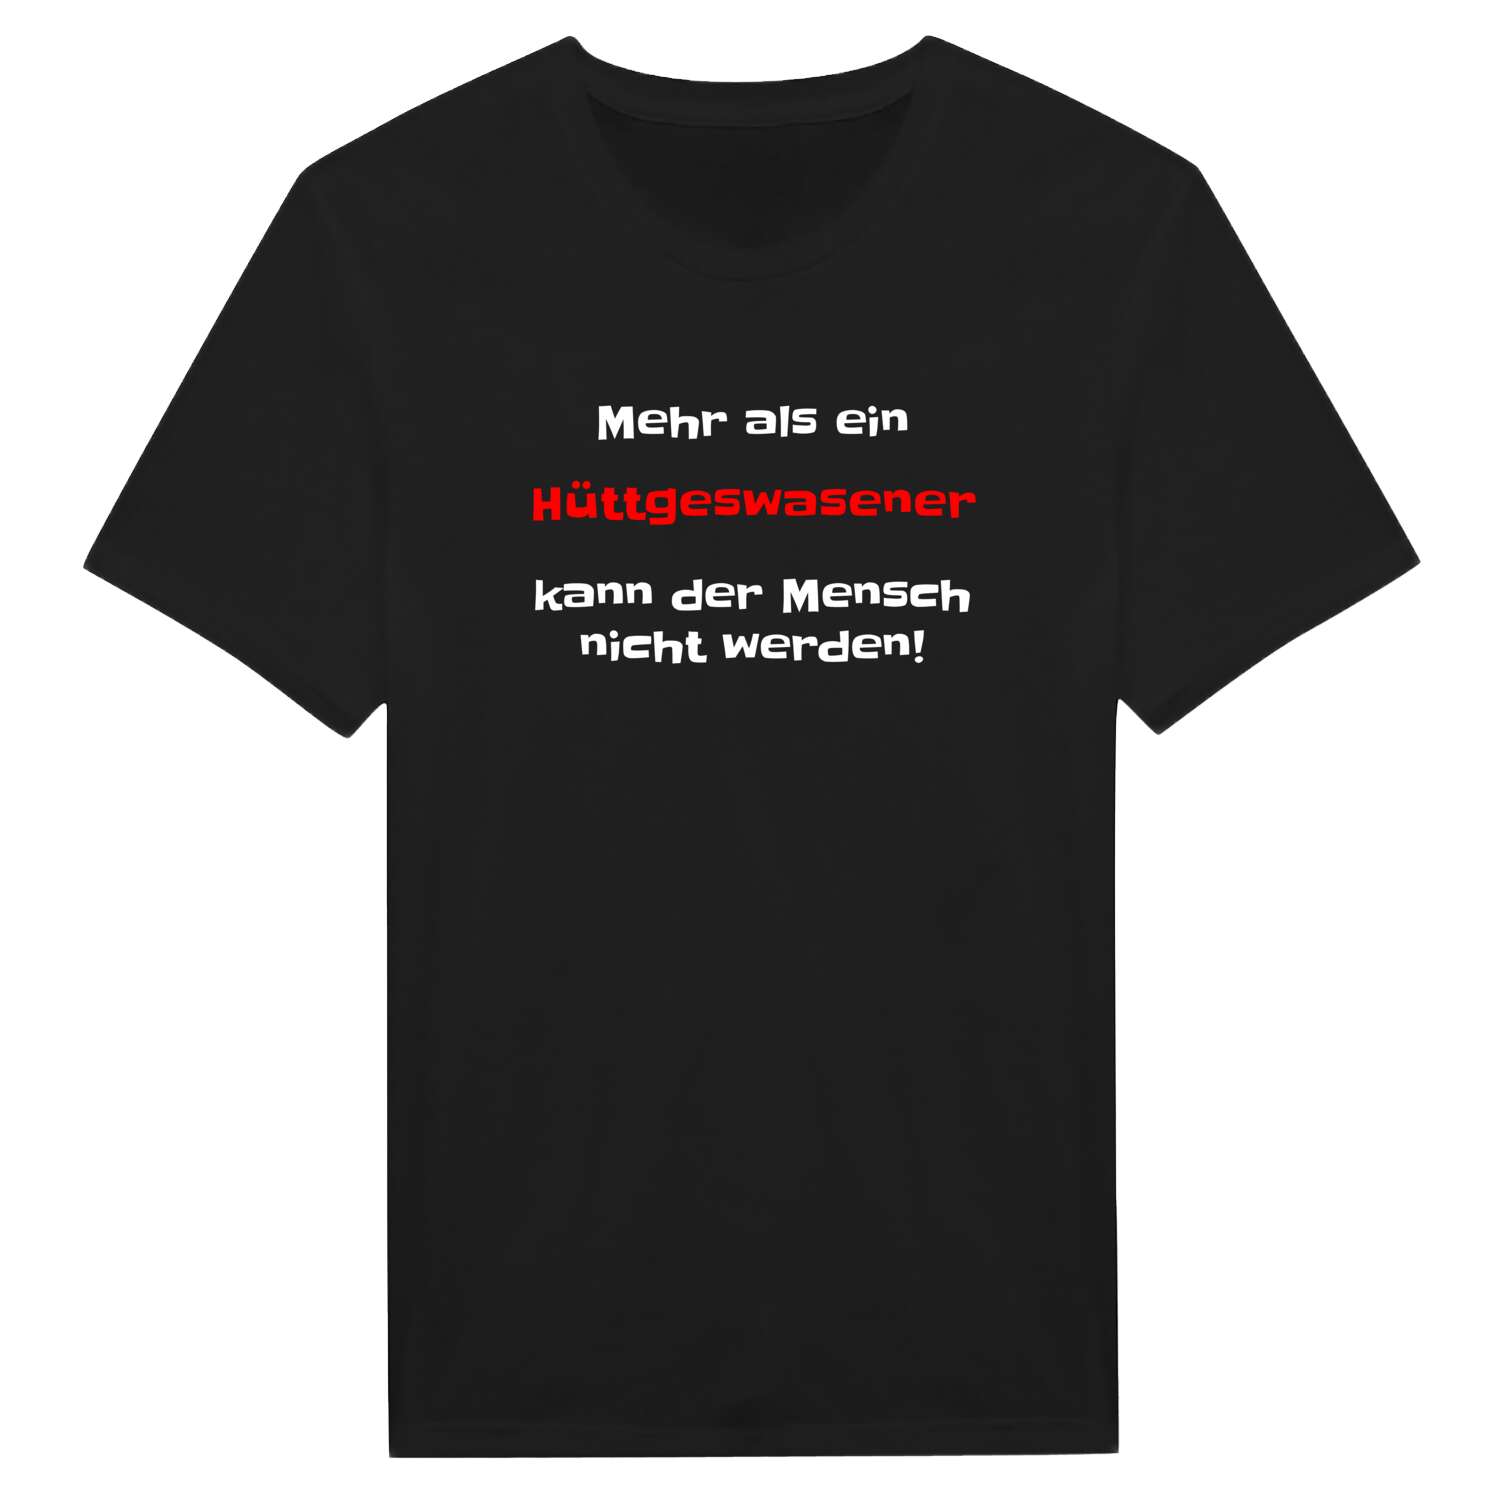 Hüttgeswasen T-Shirt »Mehr als ein«